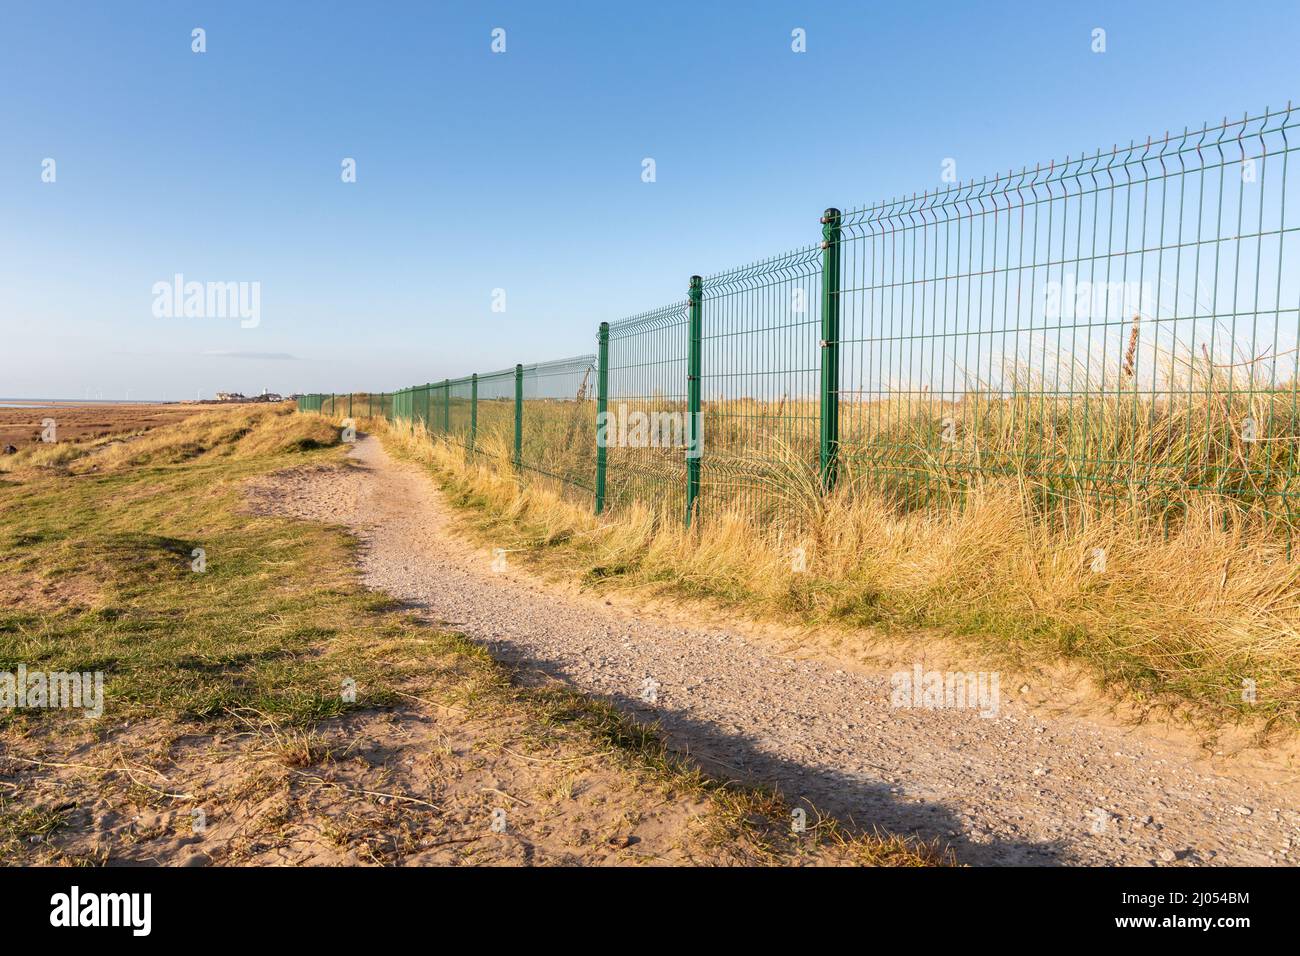 West Kirby, Regno Unito: Sentiero costiero vicino alla recinzione del confine metallico del campo da golf Royal Liverpool (Hoylake) sulla penisola di Wirral. Foto Stock